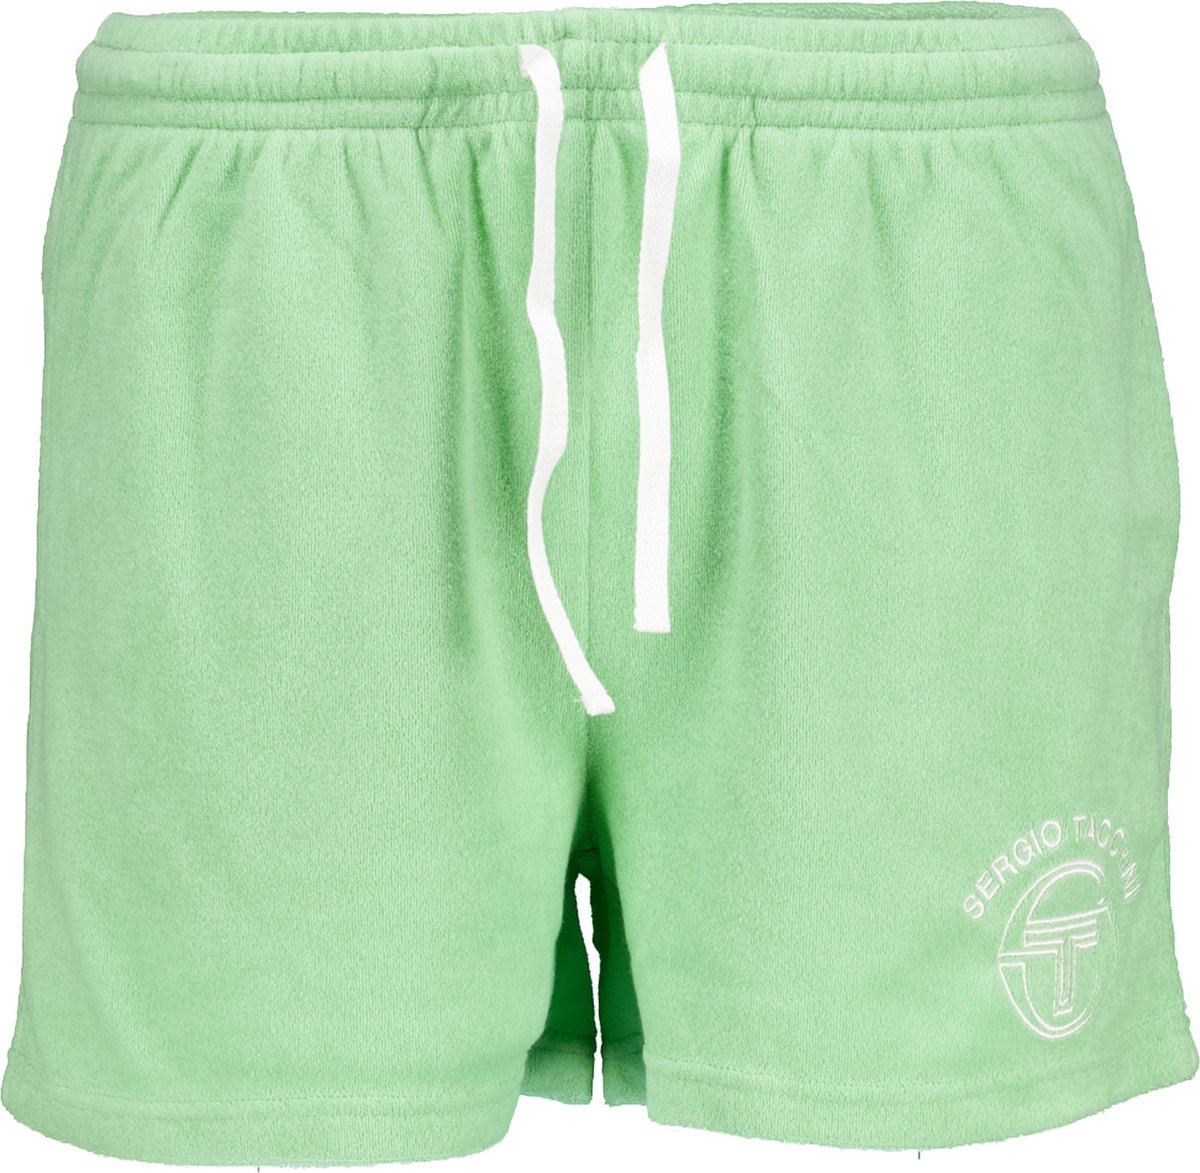 Sergio Tacchini Broek Groen Katoen maat XL Vettorio tennis shorts groen